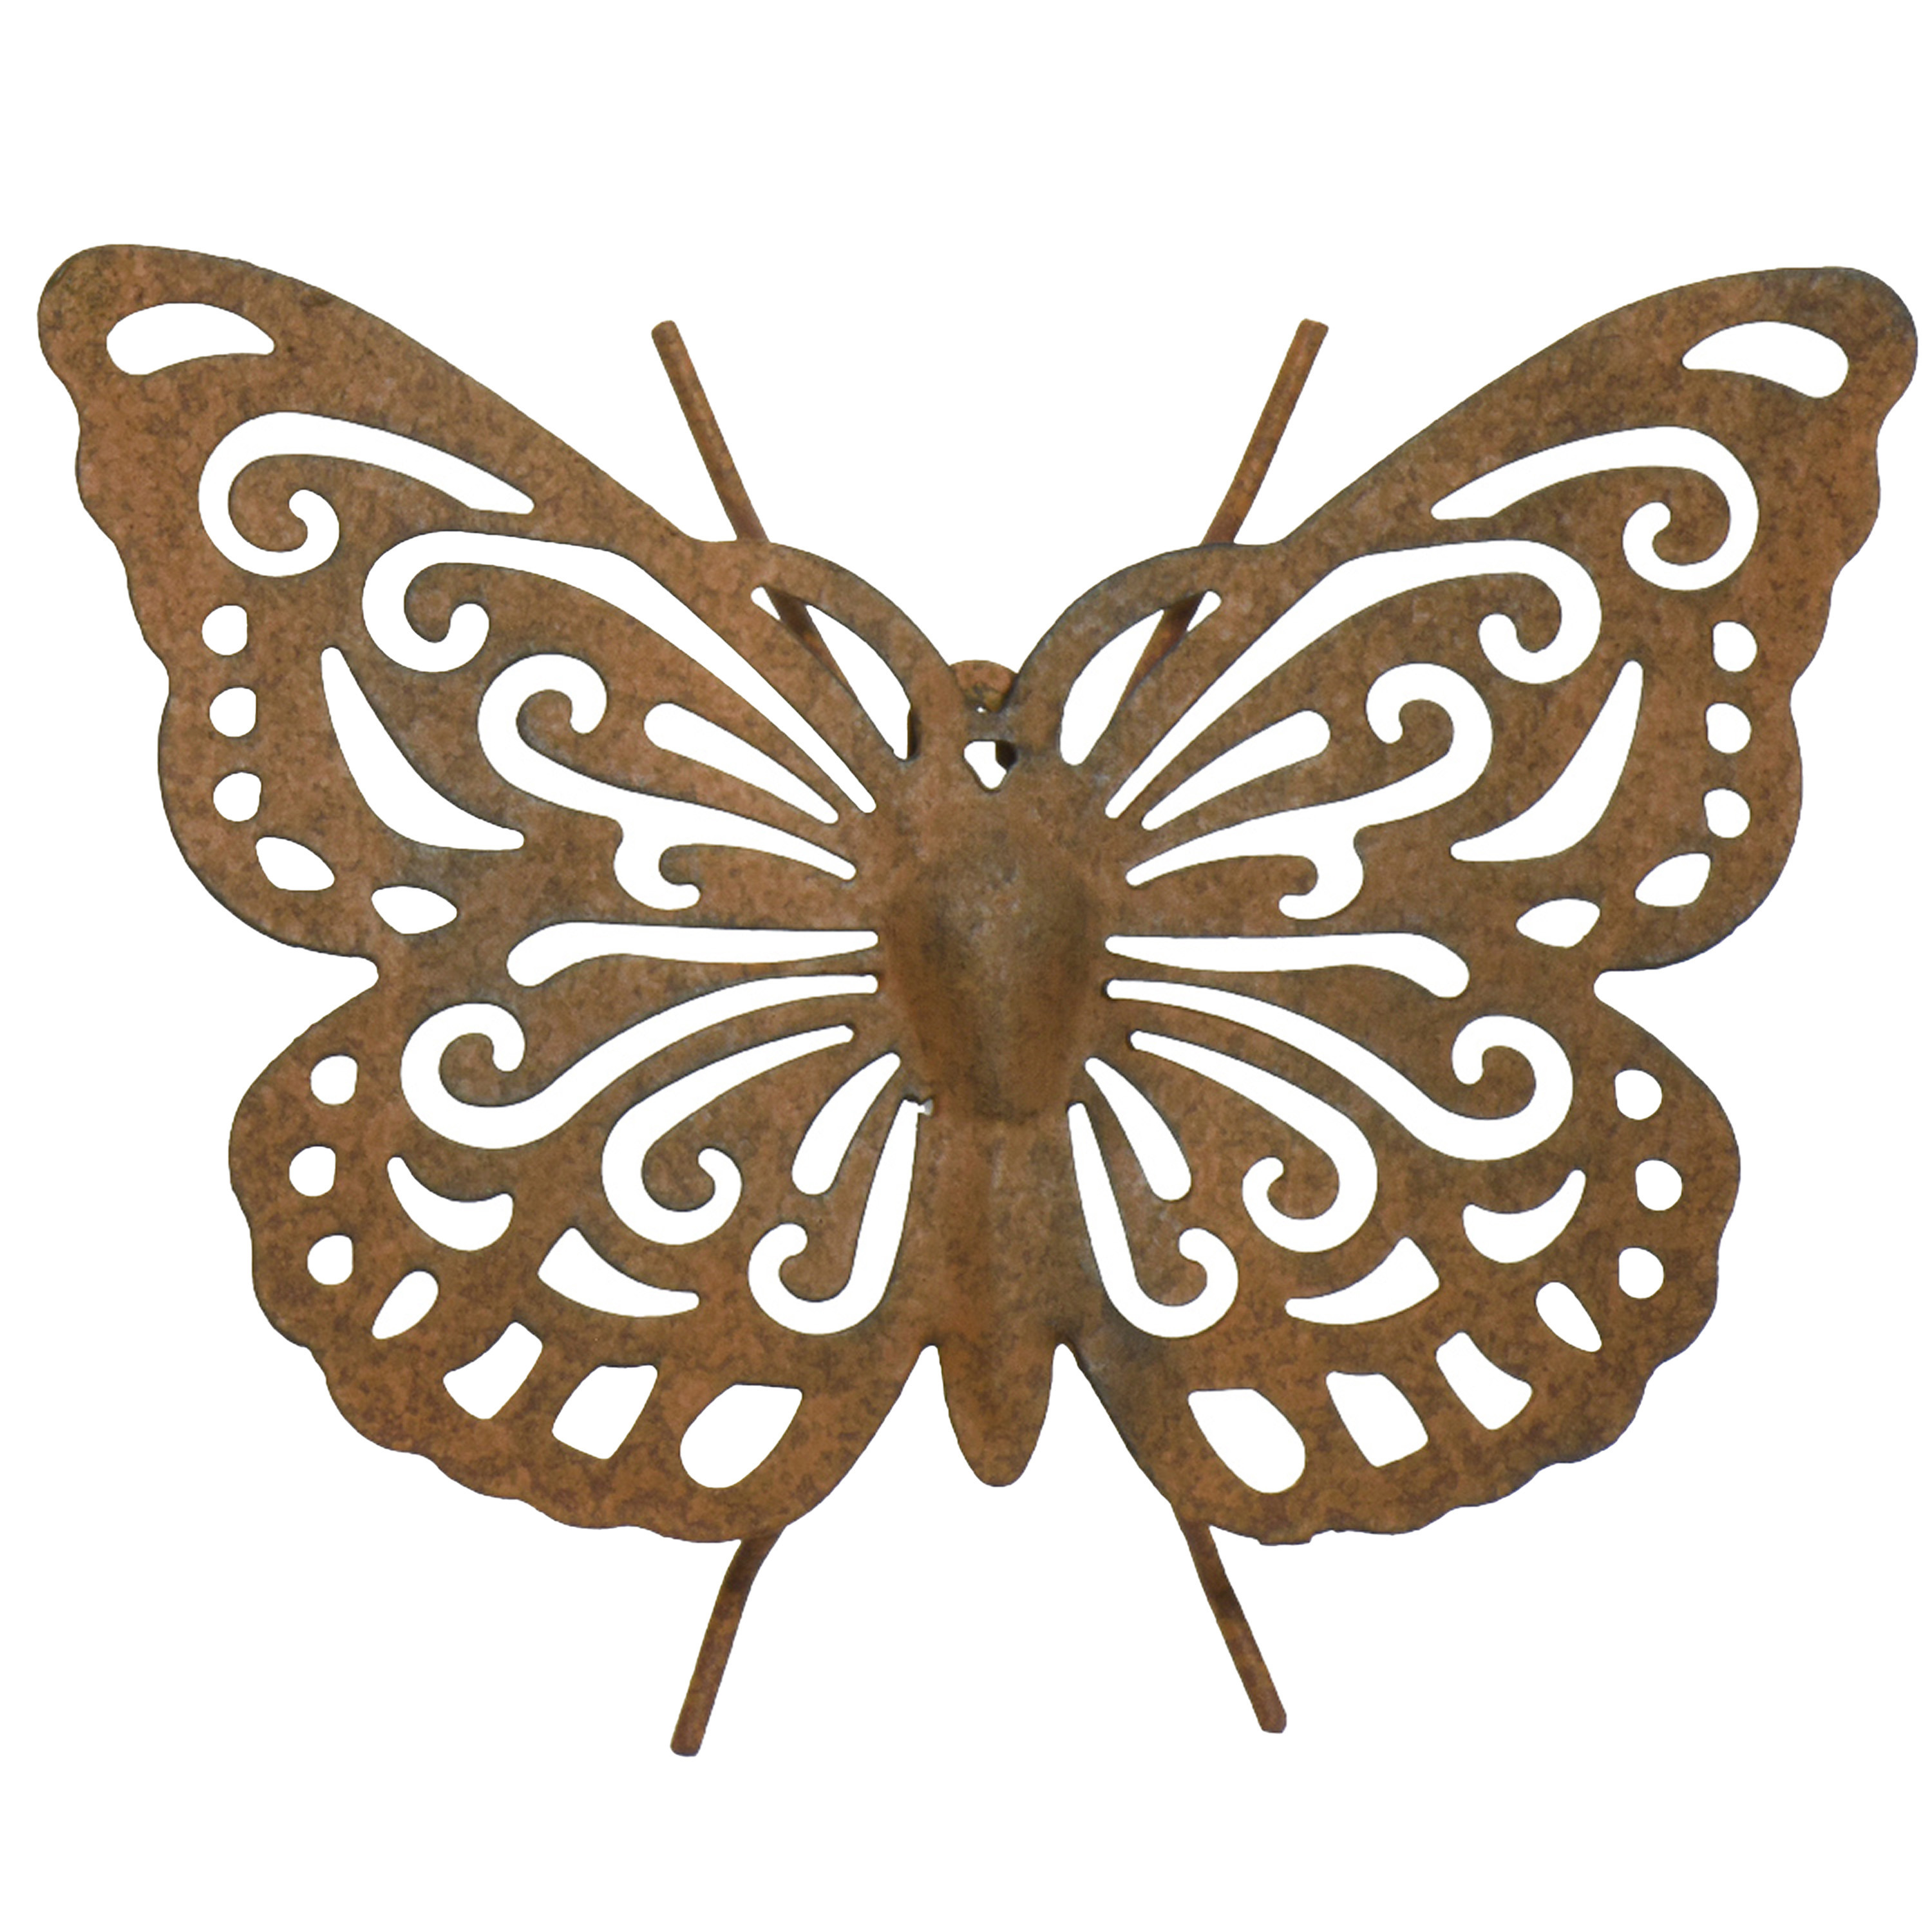 Tuin-schutting decoratie vlinder metaal roestbruin 22 x 18 cm